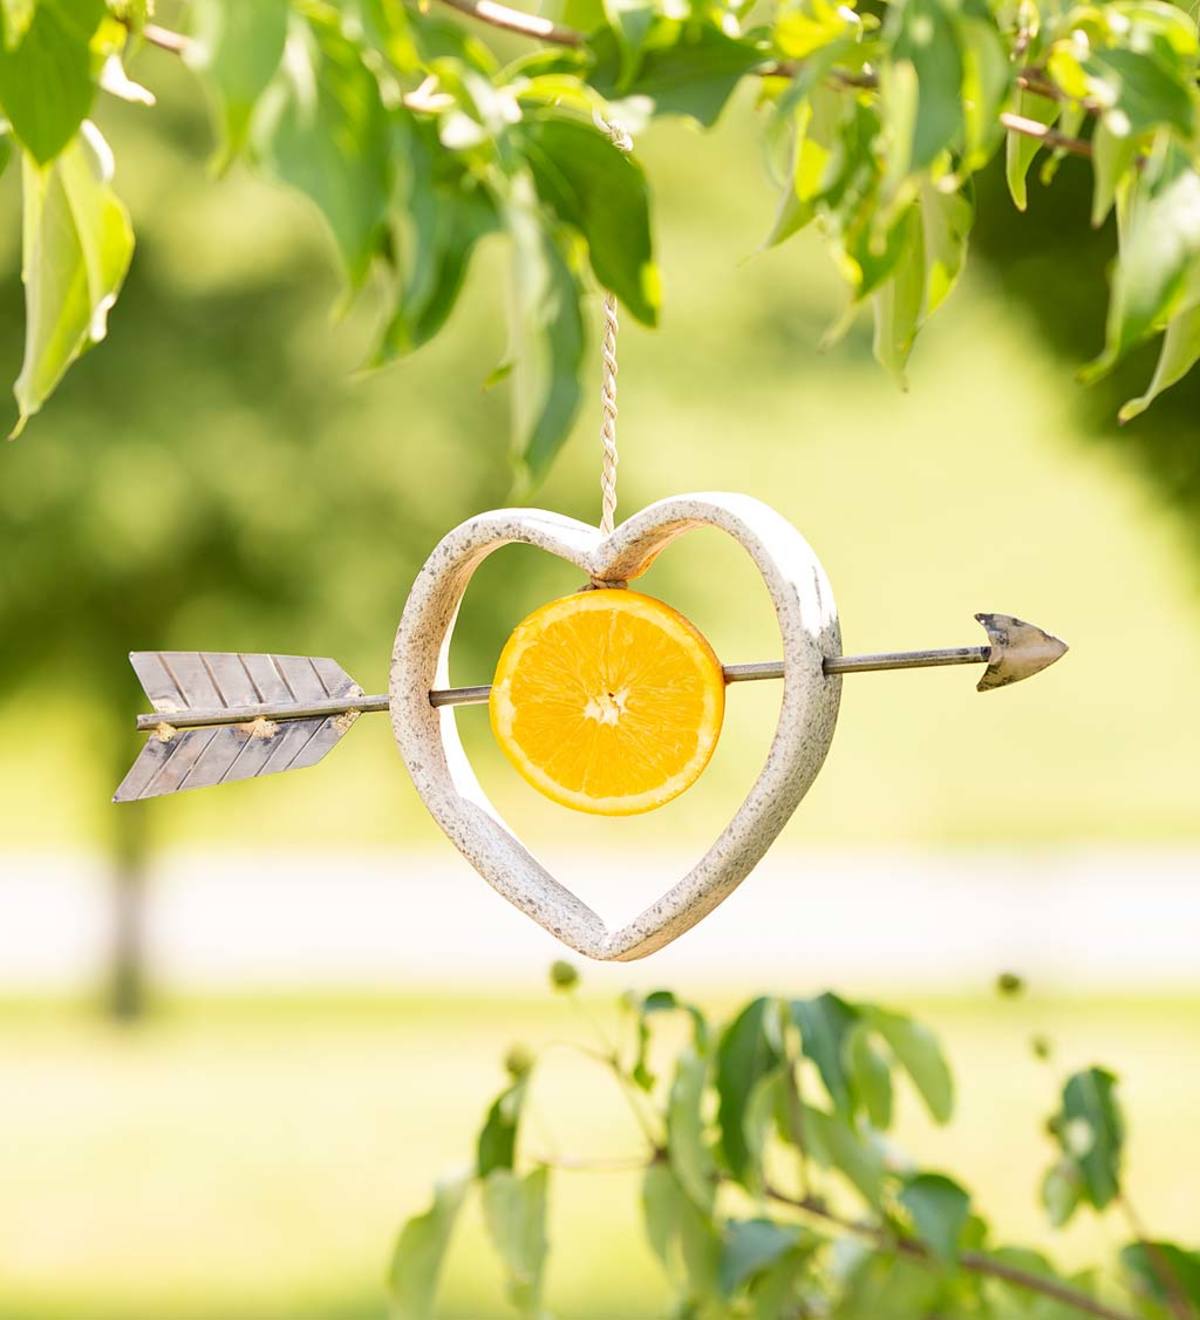 Ceramic Heart with Metal Arrow Hanging Fruit Bird Feeder